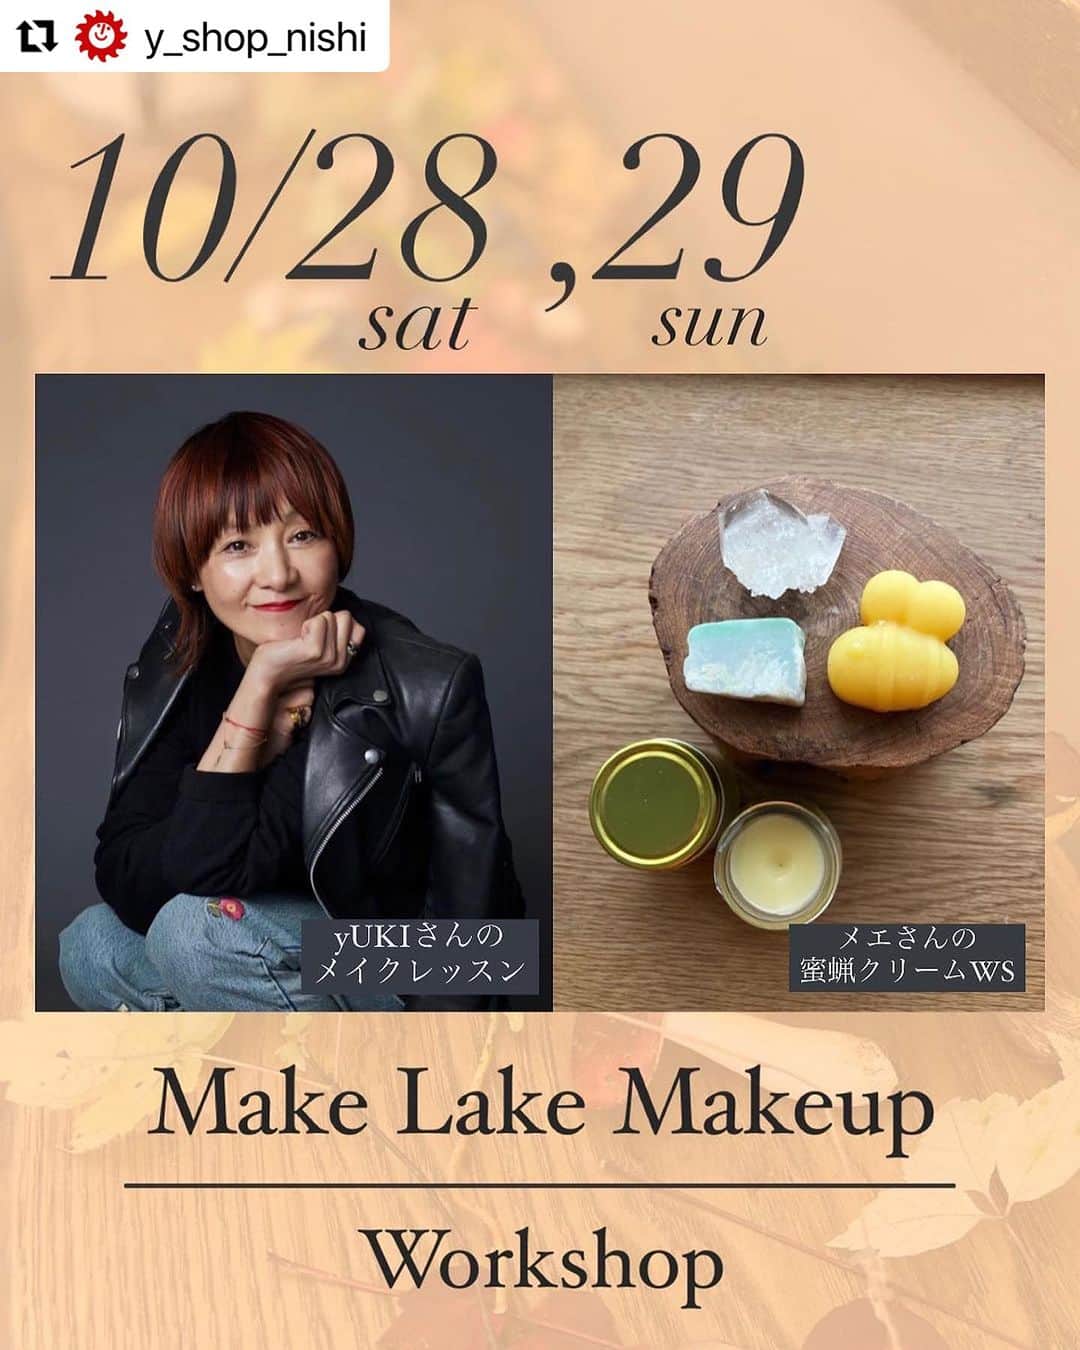 YUKI TAKESHIMAのインスタグラム：「ワクワクする✨ イベントのお知らせ📢  #Repost @y_shop_nishi with @use.repost ・・・ 💎メイクレッスン×蜜蝋クリームws×Yショップでランチorおやつ💎 ⁡ 『 Make Lake Makeup』WSのお知らせ📢 ⁡ ⁡ 国内外のトップモデル・女優から支持されるメイクアップアーティスト、yUKI氏の提案する地球🪐に優しいヴィーガンコスメ @bisou_yukitakeshima を使用したグループメイクレッスンと、大町で20年近く自然力いっぱいの材料を使った蜜蝋クリーム作っているメエさんによるWSの豪華二本立てのイベントがYショップで開催されます！ ⁡ 普段はお化粧をしない店主ユッキィが snow marché @snowmarche でyUKIさんに出会い まるで魔法の様なメイクでNewユッキィにびっくり！ 今でも思い出しては元気が湧き上がってきます♪魔法の持続力凄い！！ yUKIさんからメイクのポイントや、見せ方、そもそも分からない事などなどパーソナルレッスンが受けられる（数名のグループで）とっても貴重な機会です♡ ⁡ それと、メエさん飲んだよWSは 小谷村の秘湯奉納温泉♨️山の上のみつばちたちが集めた貴重な蜜蝋を使い、濃厚な蜜蝋クリームをつくります🐝髪やくちびる、手足の乾燥など全身におつかいいただけます 材料には 奉納温泉の蜜蝋 糸魚川翡翠 高千穂天照石（テラヘルツ） CBDパウダー 菜種油 スウィートアーモンドオイル 沈香シャム これらをご自身でお選びいただけます。 ⁡ さらにさらに、Yショップでご用意させていただくティータイムORランチタイム、次回使えるYショップドリンクチケットも付いてきます🎫 ⁡ 長くなりましたが、『Make Lake Makeup』WS 企画してる私自身が夢のようでワクワクしすぎてビューティー波にまみれています。 ⁡ ⁡ ぜひこれを機に、大町、仁科三湖、木崎湖とも出会っていただけるきっかけになれば嬉しいなって思っております⛰️💕✨ ⁡ ⁡ _______________________________ ⁡ 🔸日にち　10/28（土）、29（日） ⁡ 🔸場所　Yショップニシ 長野県大町市平12076 大糸線海の口駅徒歩8分 ⁡ 🔸料金　¥12,000  メイクWS,みつろうWS,おやつorランチ代、お土産にドリンクチケット含む ※カメラ好き店主がキラキラ記念ポートレートも撮影させていただきます☆📷 ⁡ 🔸10月28日（土）定員15名 ①組目　13:00〜16:00  　WS /13:00-14:30   TEA&シェアリング/14:30-16:00 ⁡ ②組目　14:30〜17:30 　　　　　TEA&シェアリング/14:30-16:00   WS/16:00-17:30 ⁡ ⁡ ⁡ 🔸10月29日（日）定員15名 ①組目　10:00〜13:00  　WS /10:00-11:30   ランチ&シェアリング/ 11:30-13:00 ⁡ ②組目　11:30〜14:30 　　　　　ランチ&シェアリング/  11:30-13:00   WS/13:00-14:30 ⁡ 　  🔸ご予約方法 YショップＤＭにて。 →記入例の様に送ってください 〇〇日　〇組目希望 お名前、電話番号、メールアドレスを ご記入ください。 複数名の場合も、それぞれの方のお名前、電話番号、メールアドレスをご記入ください。 ご予約状況はストーリーにアップするのでチェックしてみてくださいね。 ⁡ お問い合わせもお気軽にどうぞ！！ ______________________________  #大町市 #木崎湖 #メイクレッスン #メイクアップ #bisou #みつろうクリームワークショップ  #リゾートコンビニ #enhanceaday」